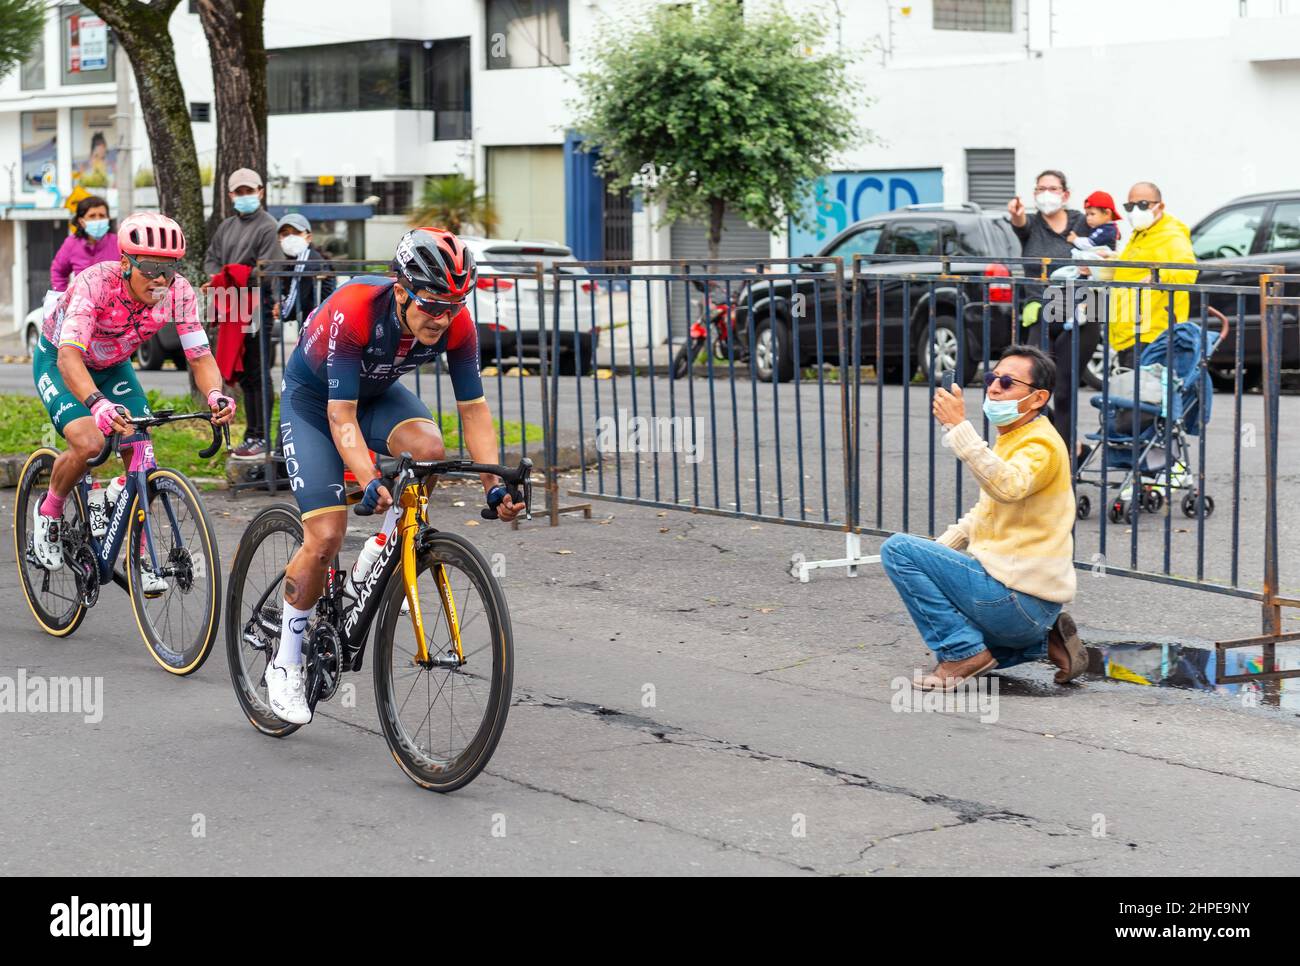 Richard Carapaz, ecuadorianischer Radfahrer und Goldmedaillengewinnerin bei den olympischen spielen in Tokio, der den zweiten Platz beim Straßenrennen der Männer in Ecuador auf dem Goldenen Rad in Quito, Ecuador, beendete. Stockfoto